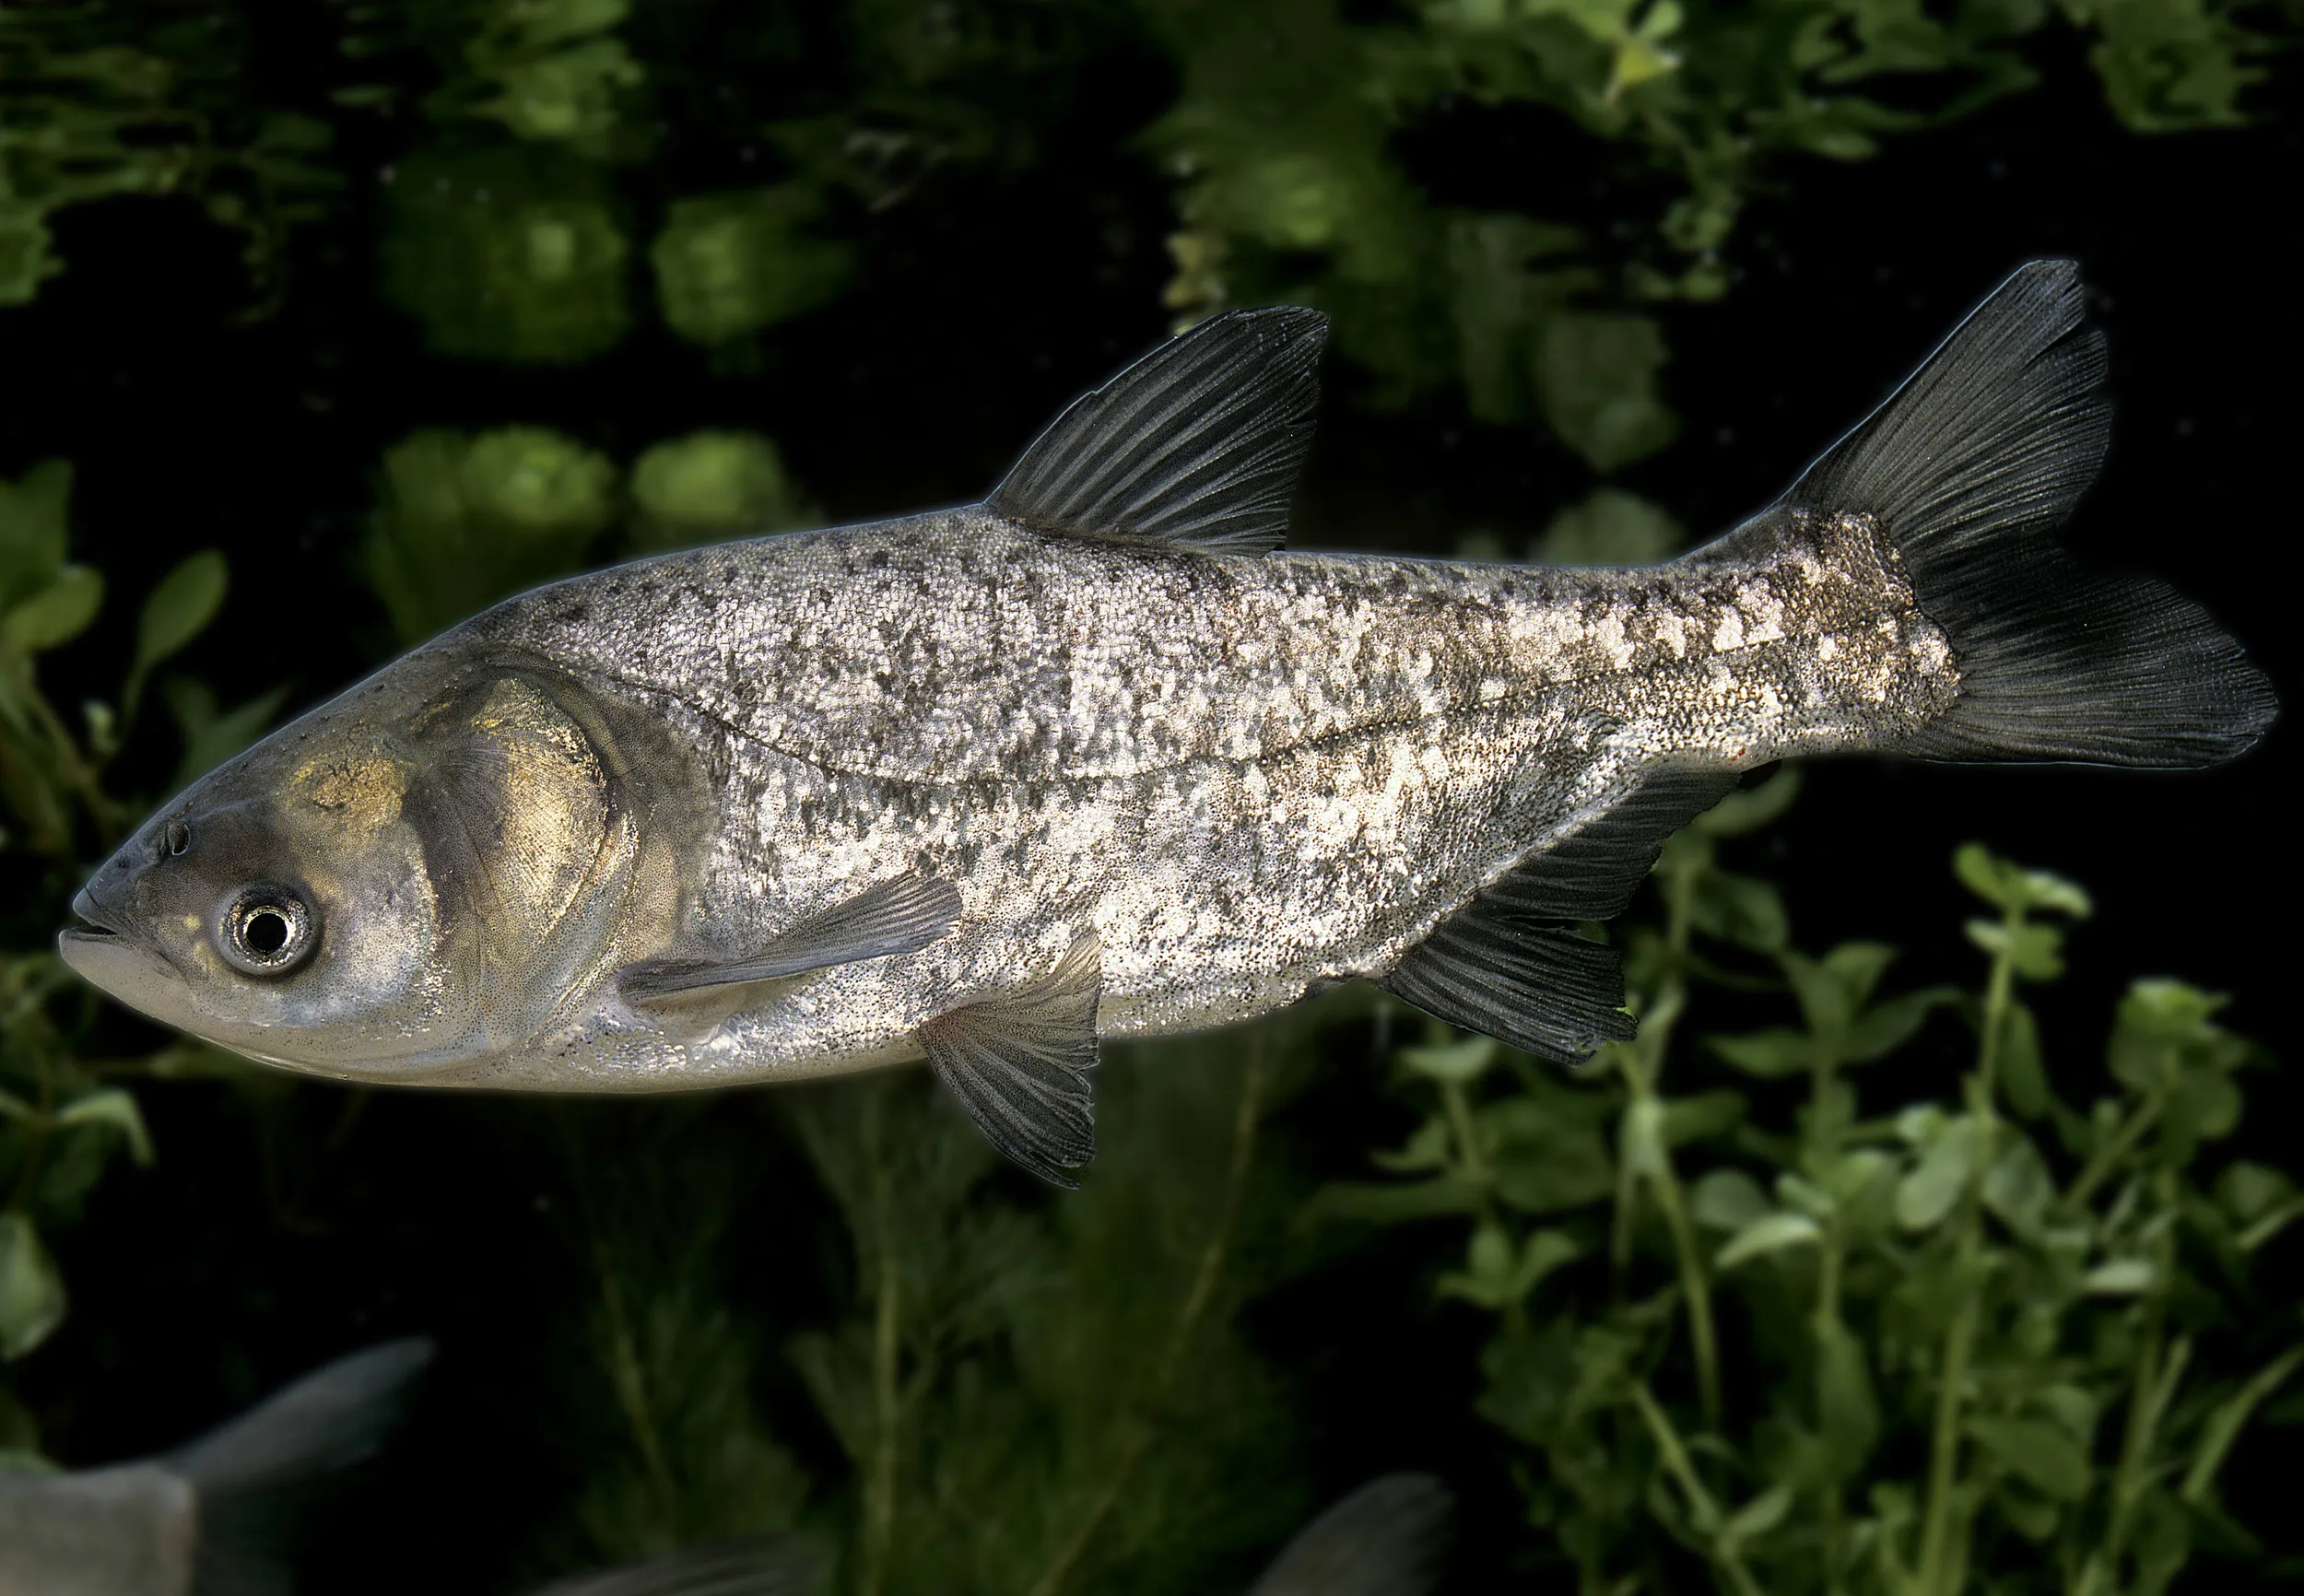 Riba tolstolobik srebrnastog tela sa raširenim perajama pliva u vodi gde se vidi puno zelenih trava.